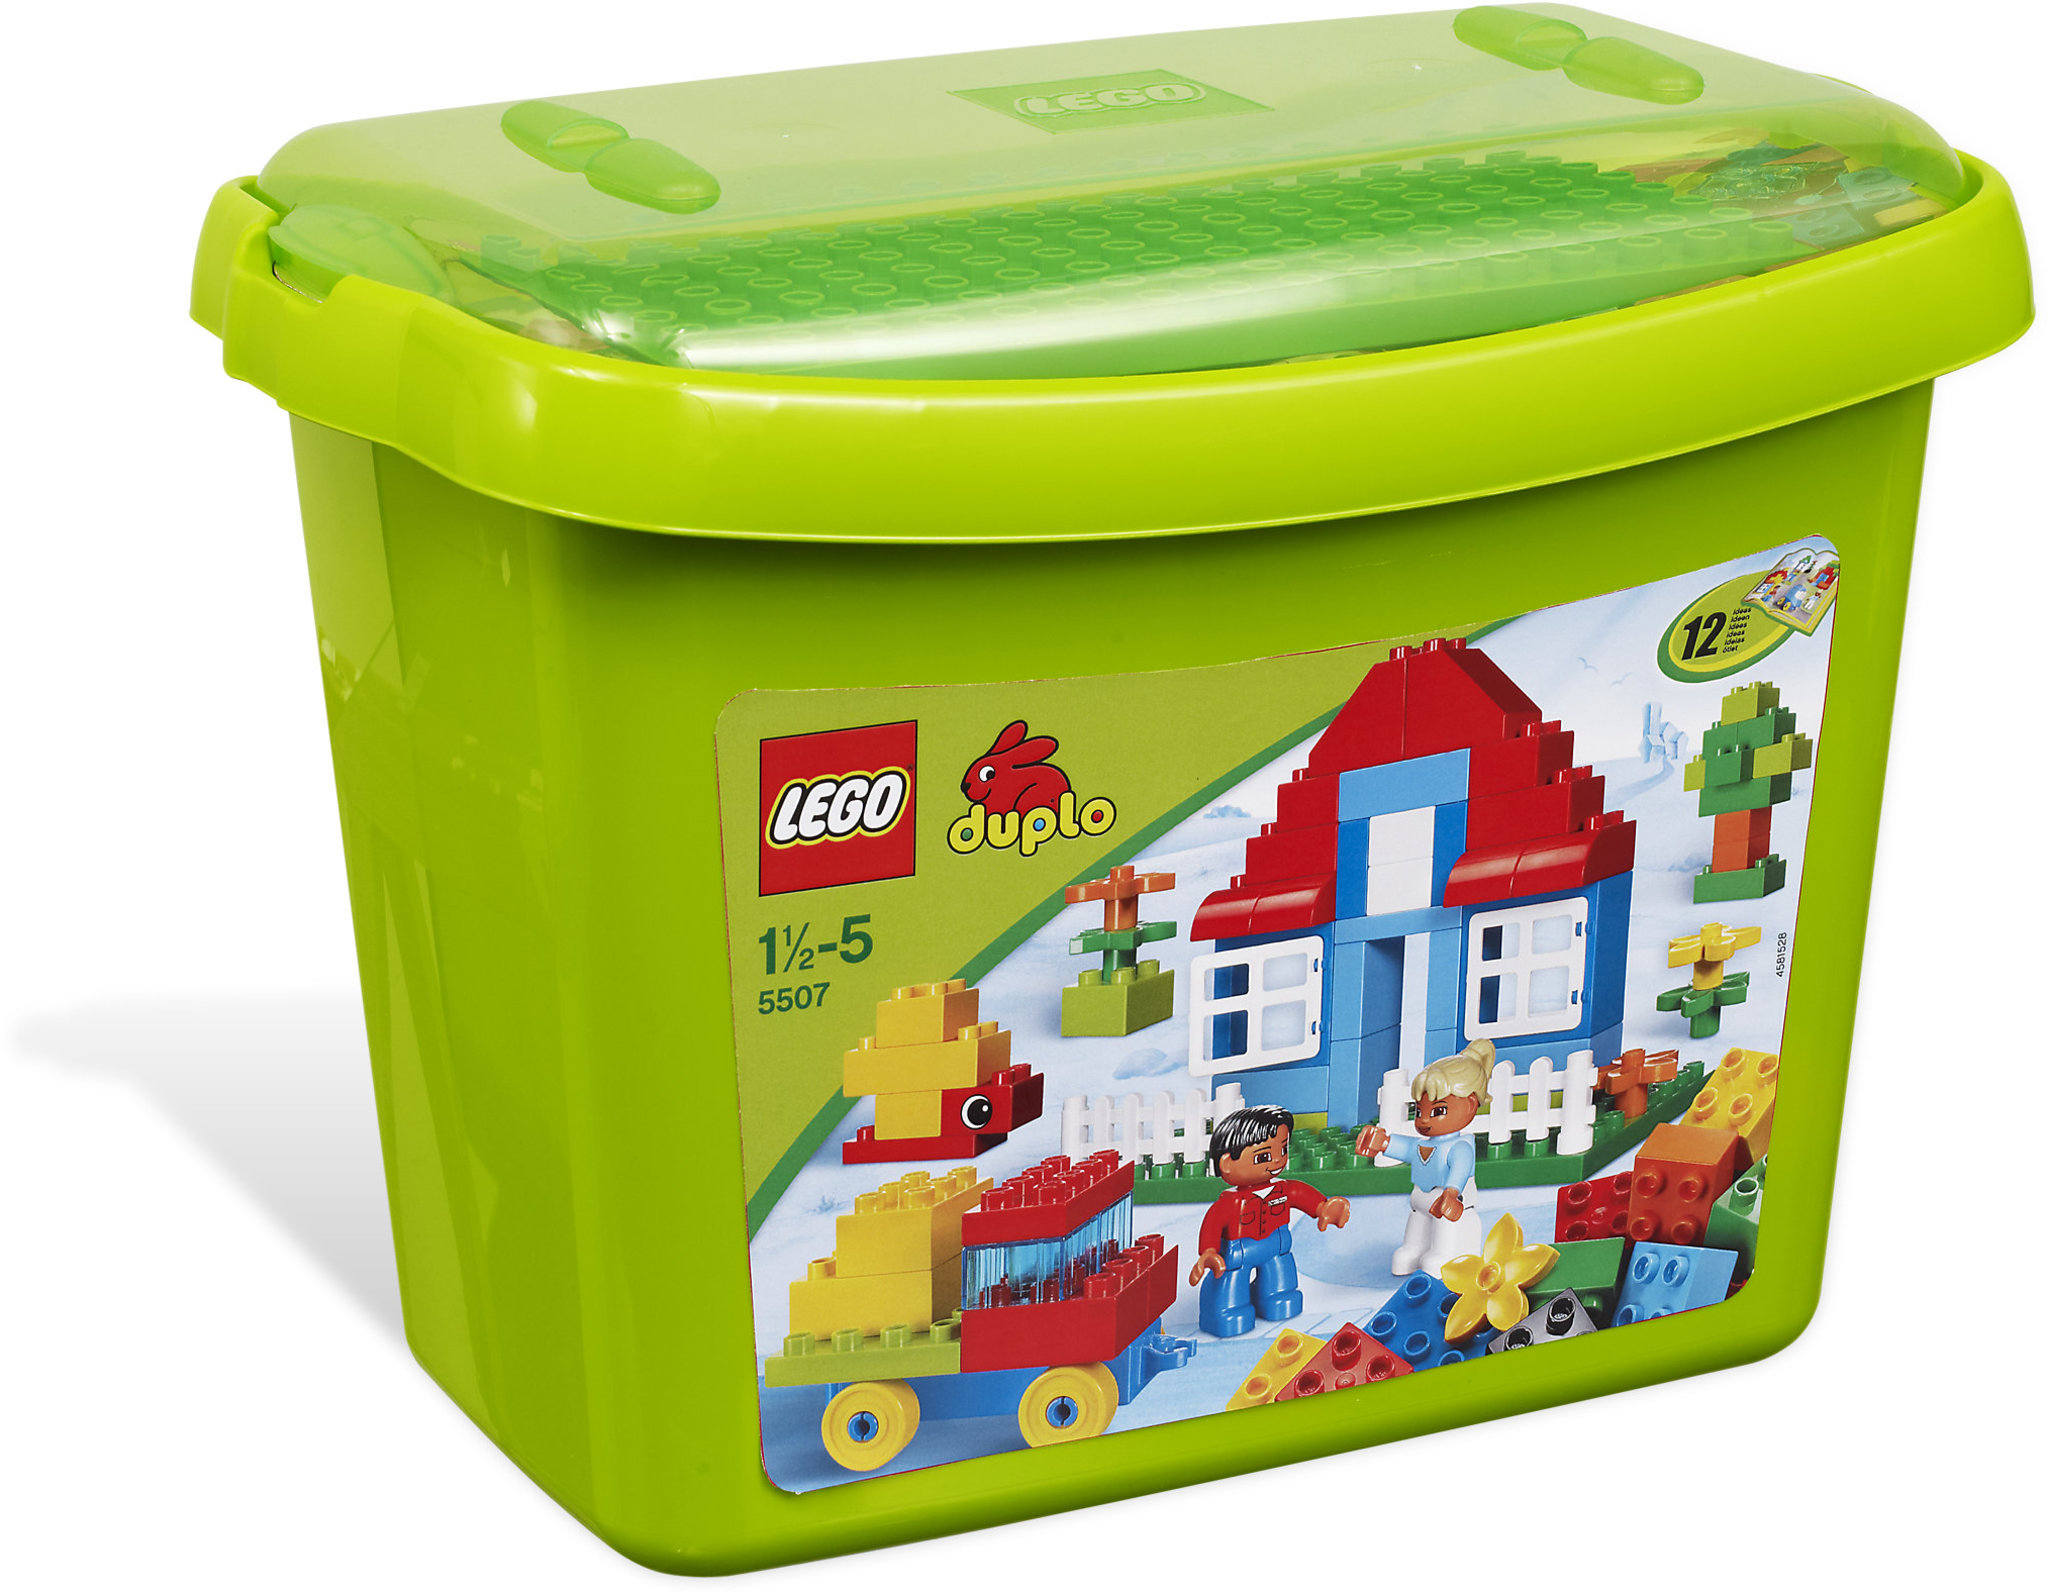 LEGO Duplo 5507 - Contenitore Grande